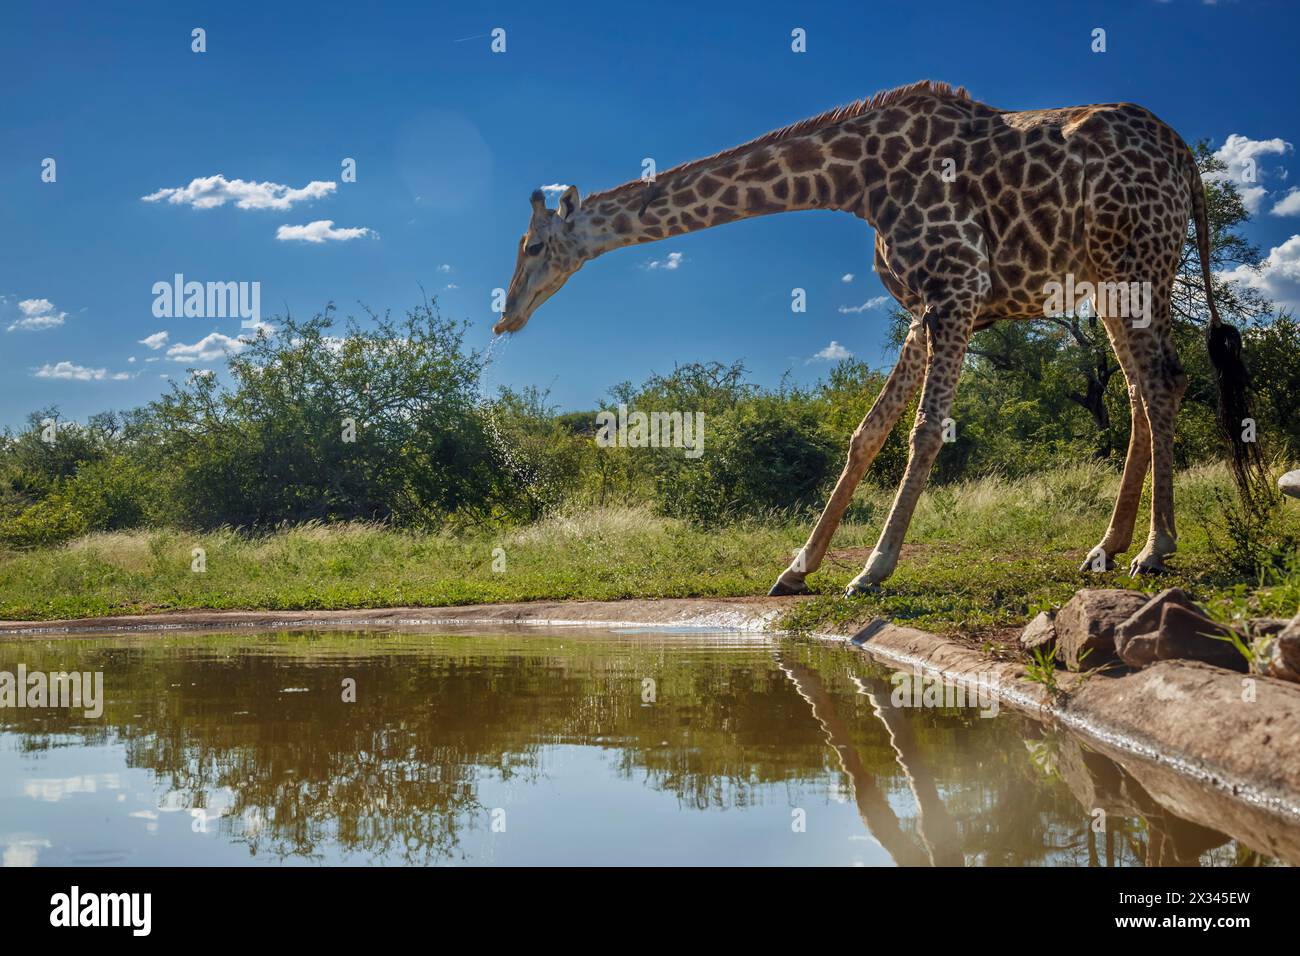 Girafe buvant au point d'eau dans le parc national Kruger, Afrique du Sud ; espèce Giraffa camelopardalis famille des Giraffidae Banque D'Images